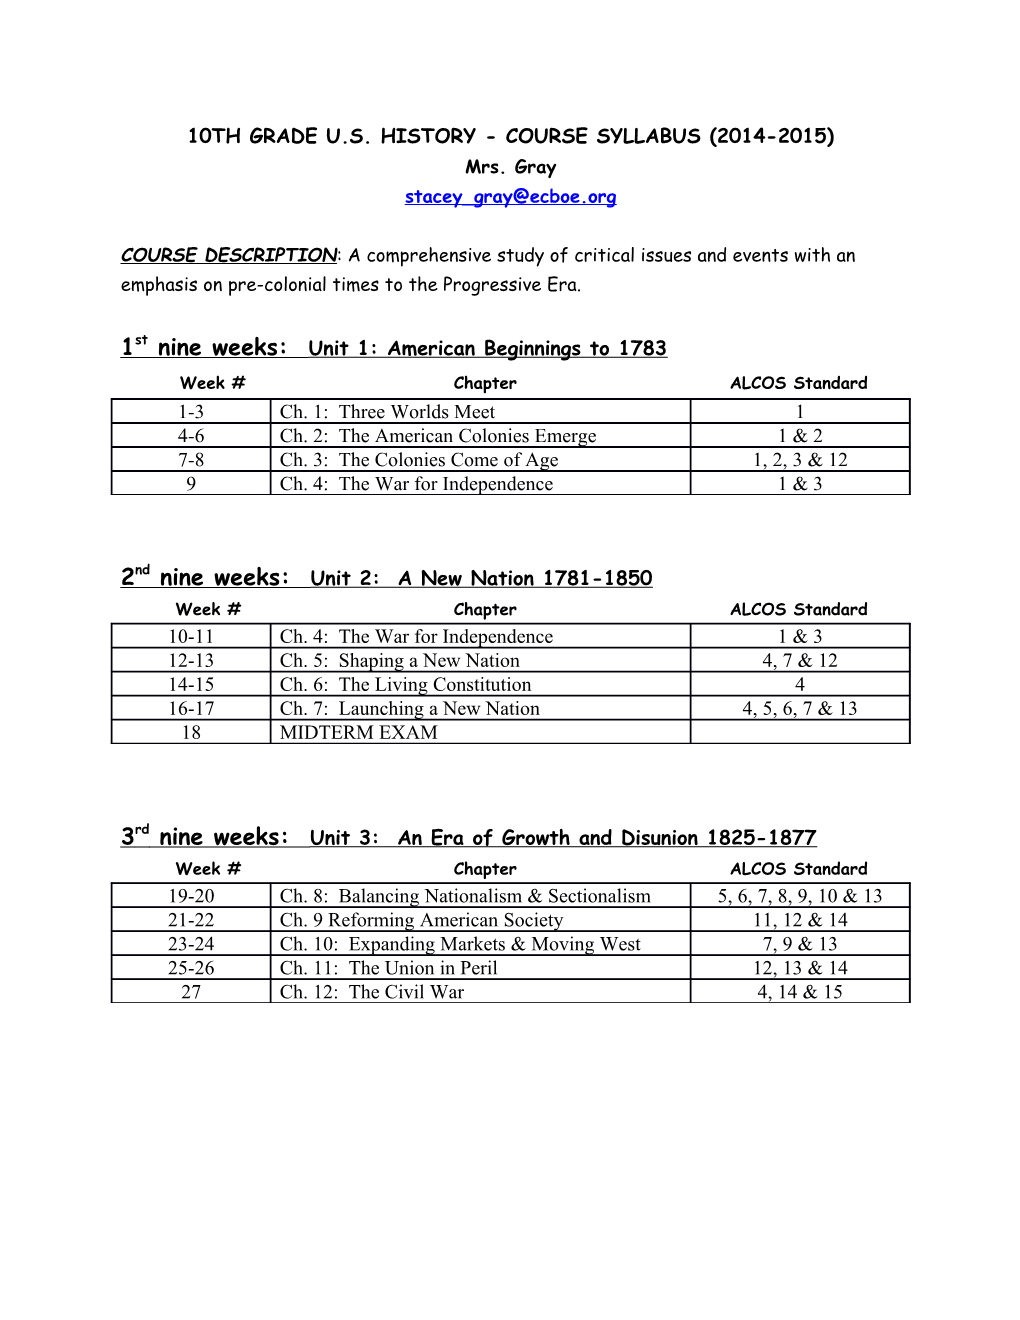 10Th Grade U.S. History - Course Syllabus (2014-2015)